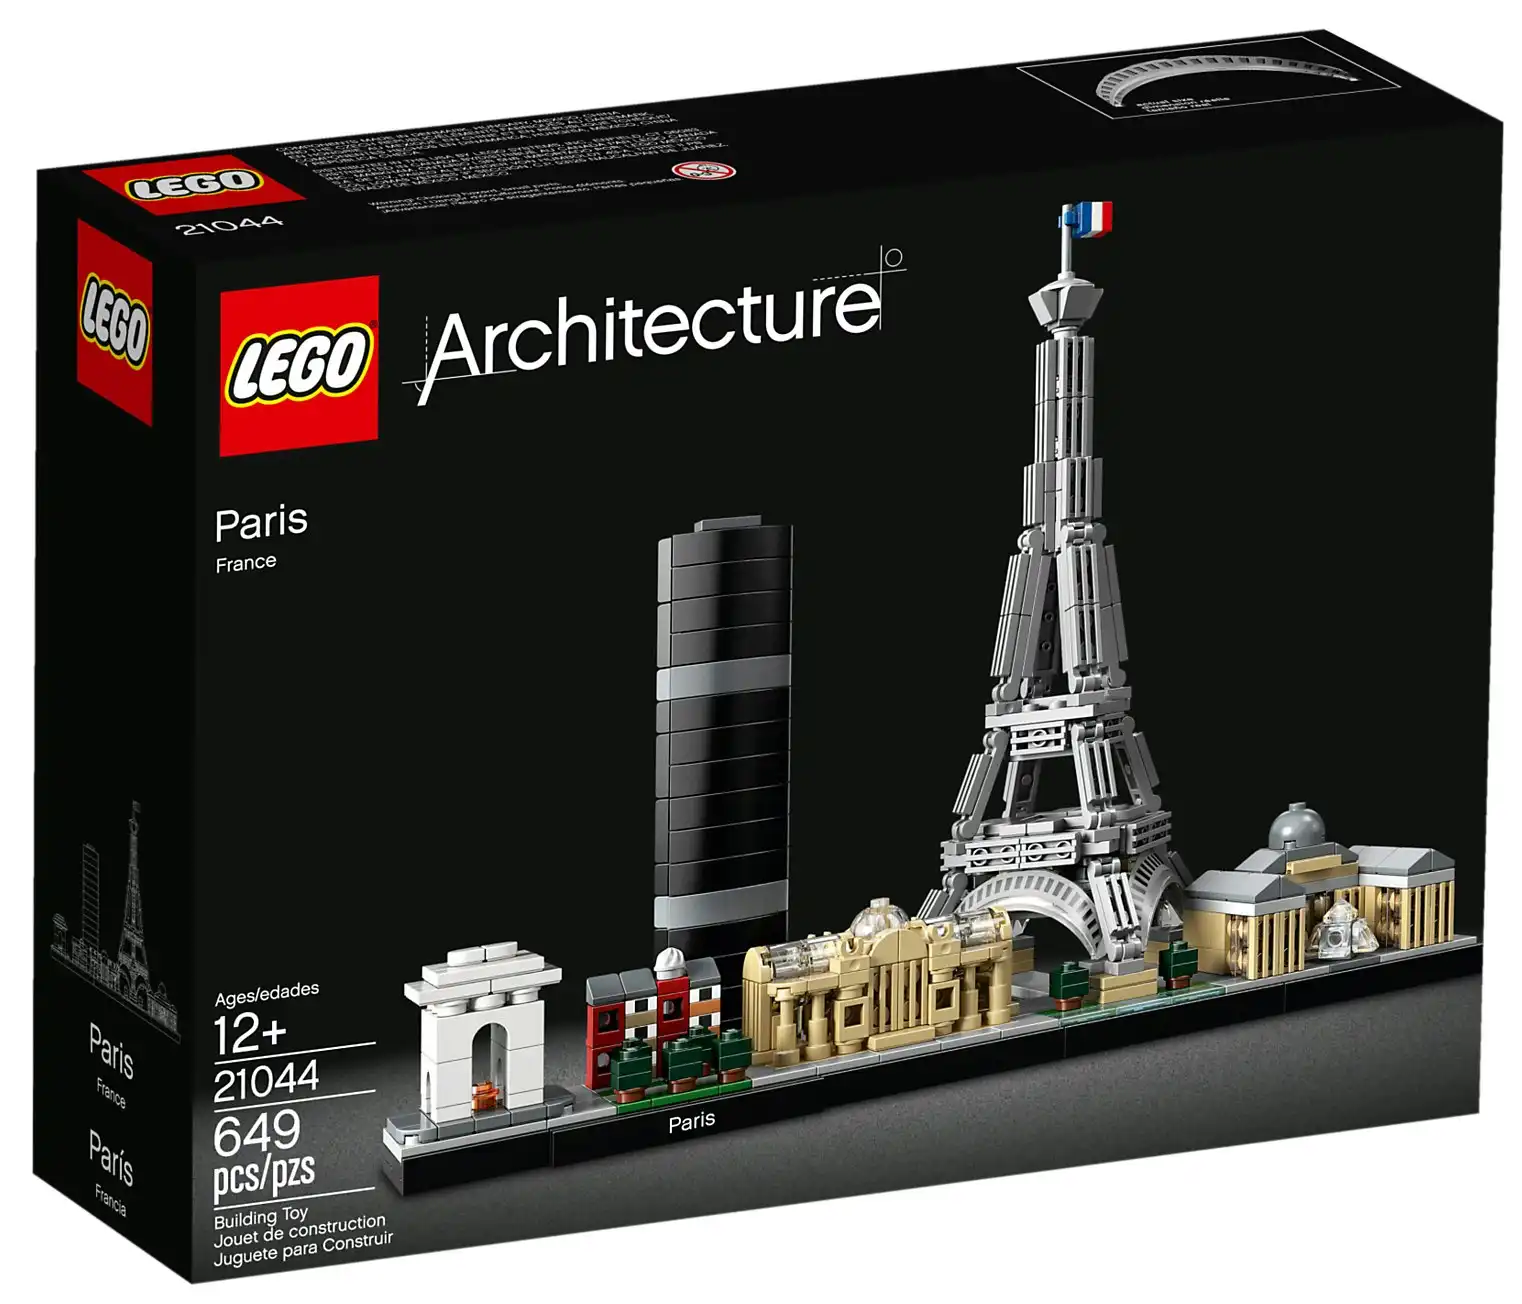 LEGO 21044 Paris - Architecture